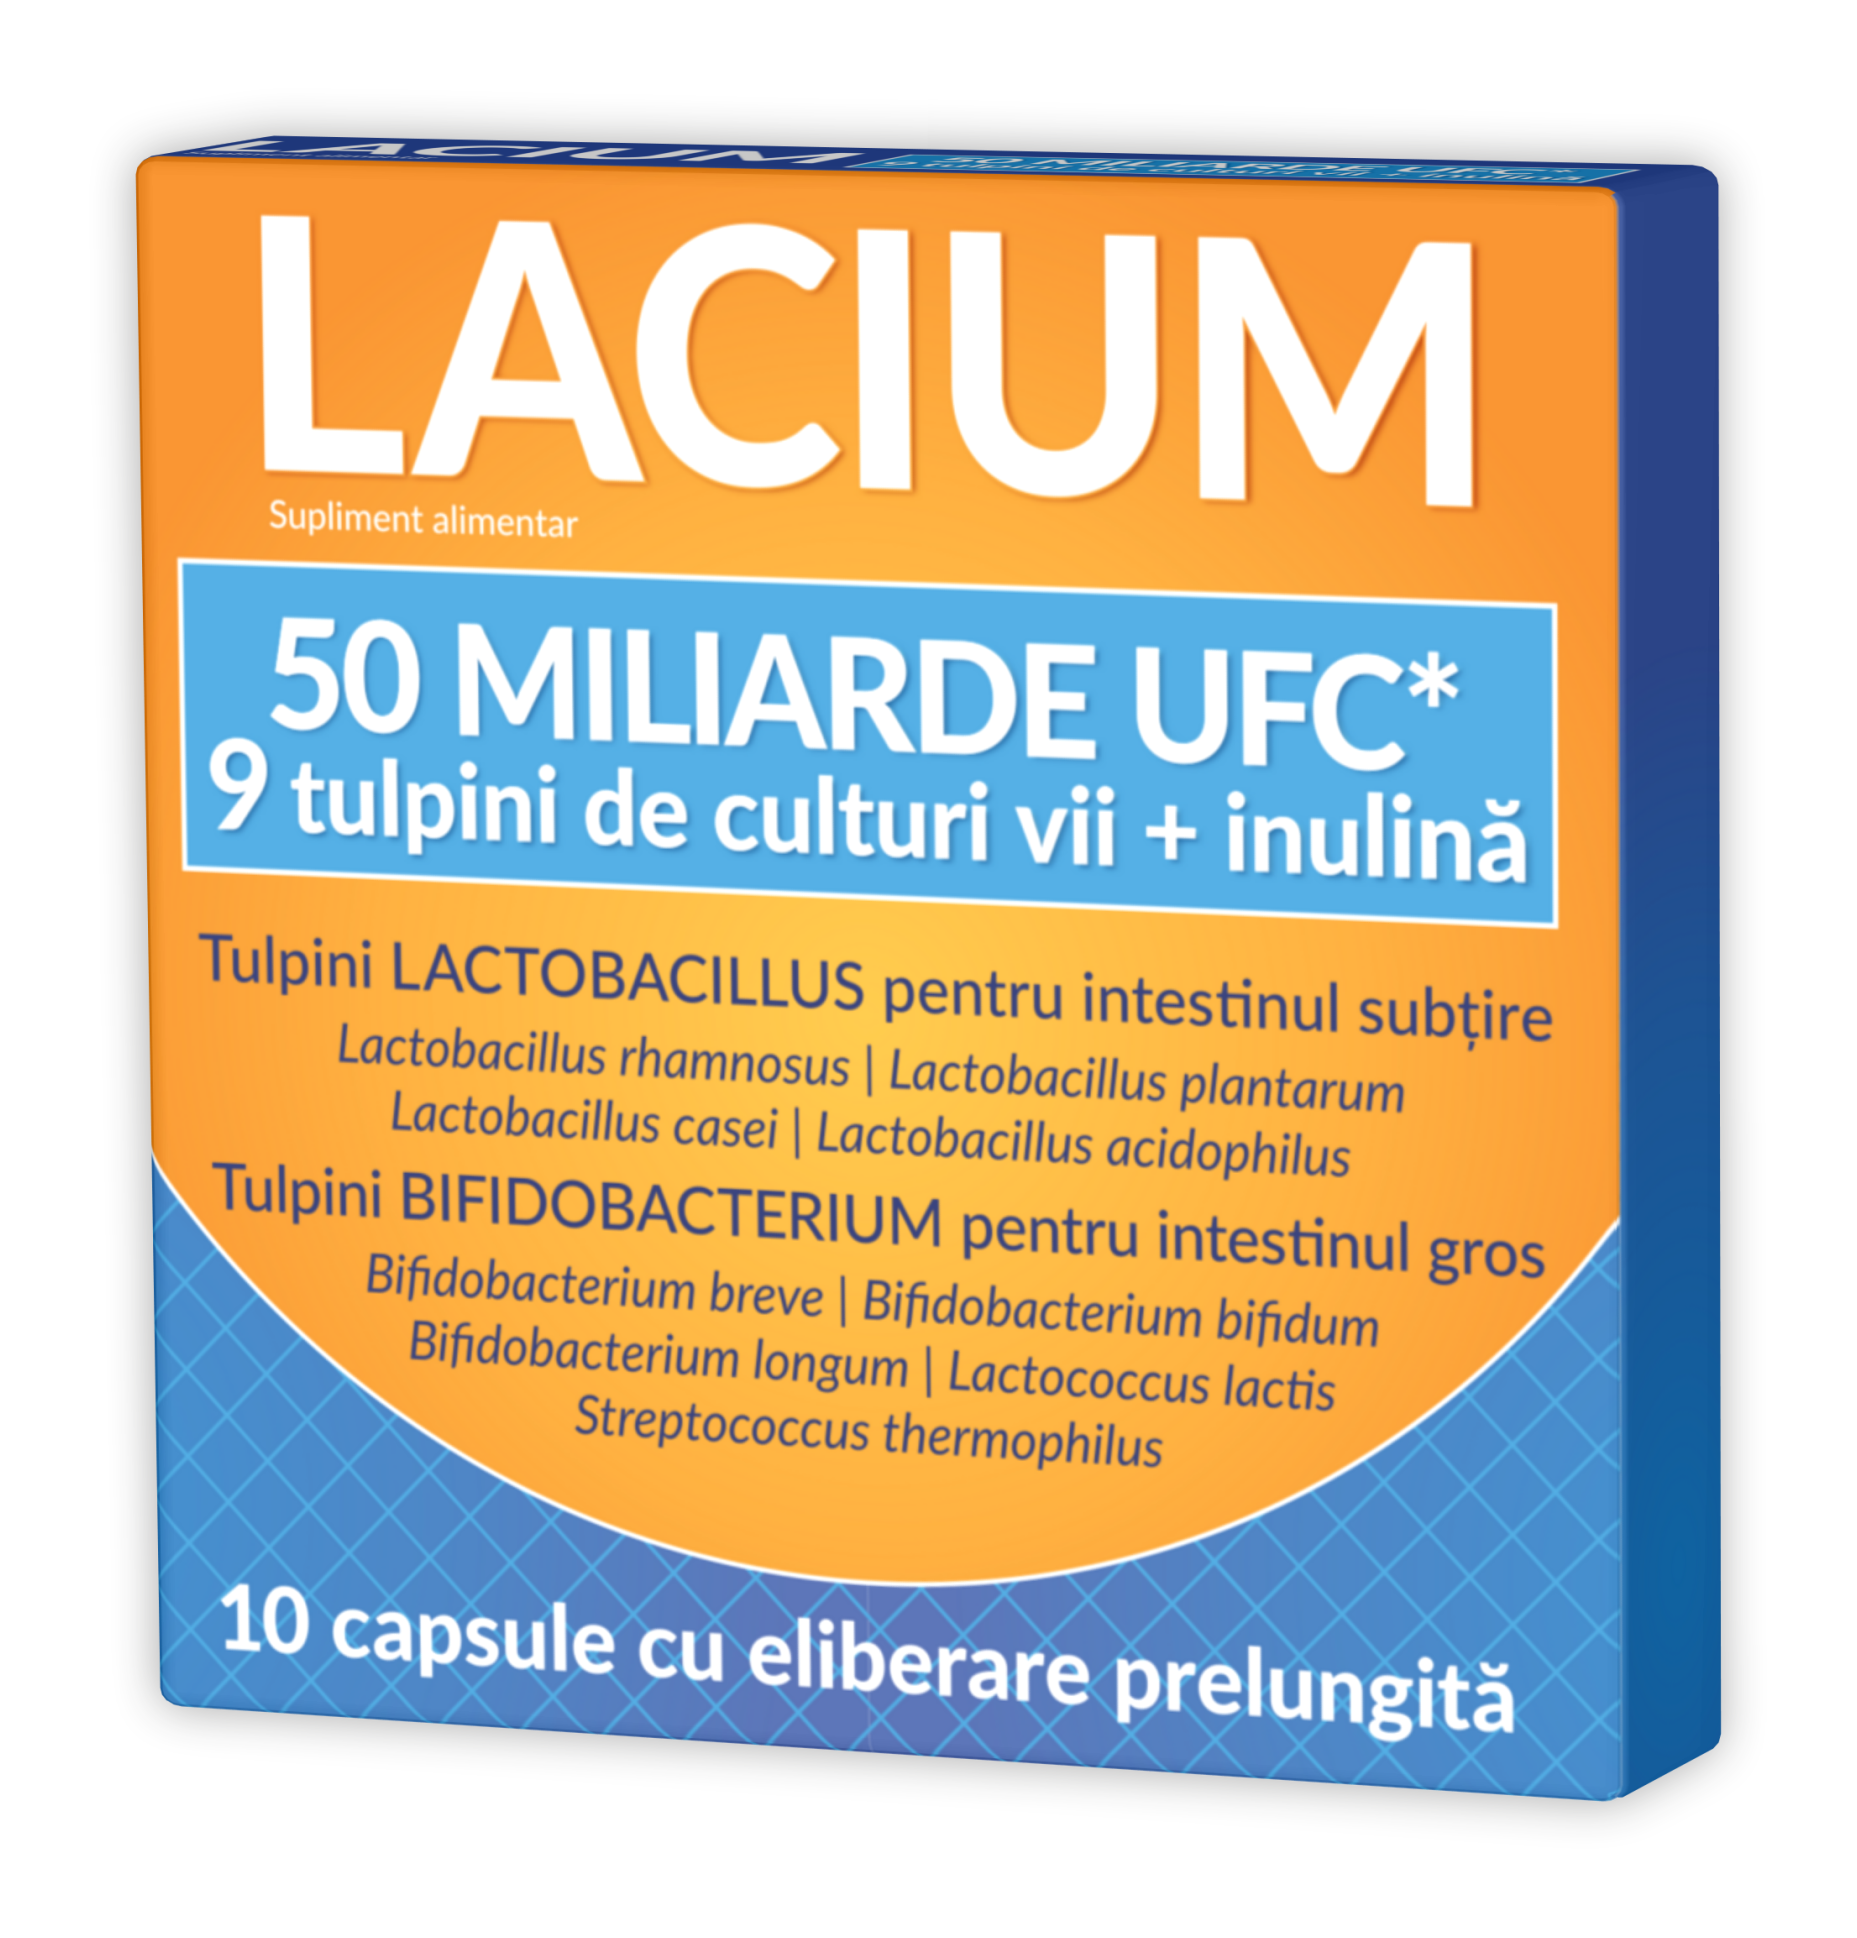 Probiotice  - Lacium 50miliarde UFC x 10cps.elib.prel (Zdrovit), epastila.ro